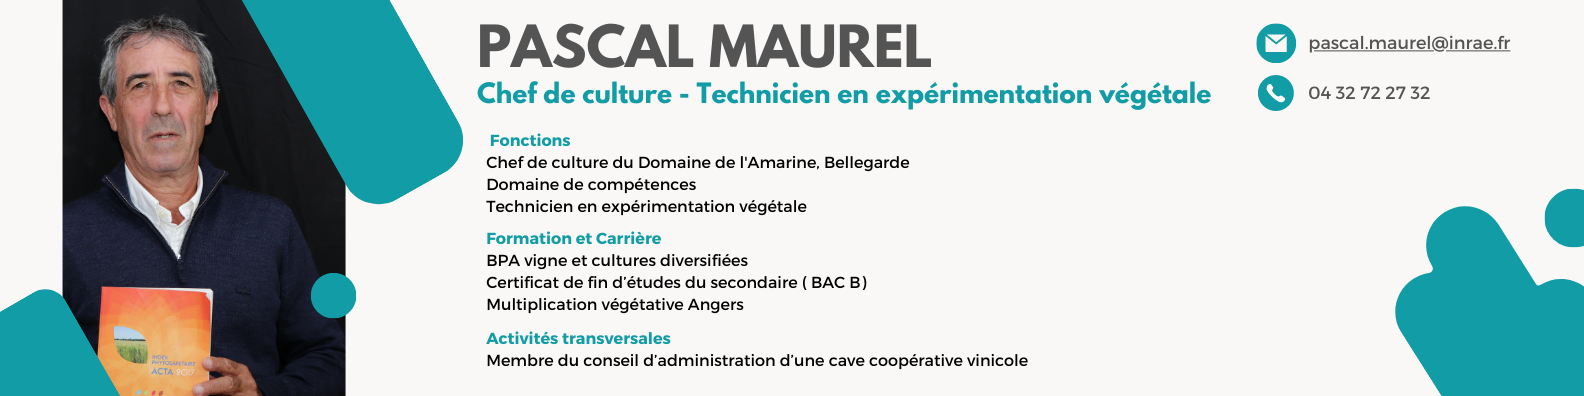 Pascal Maurel.png